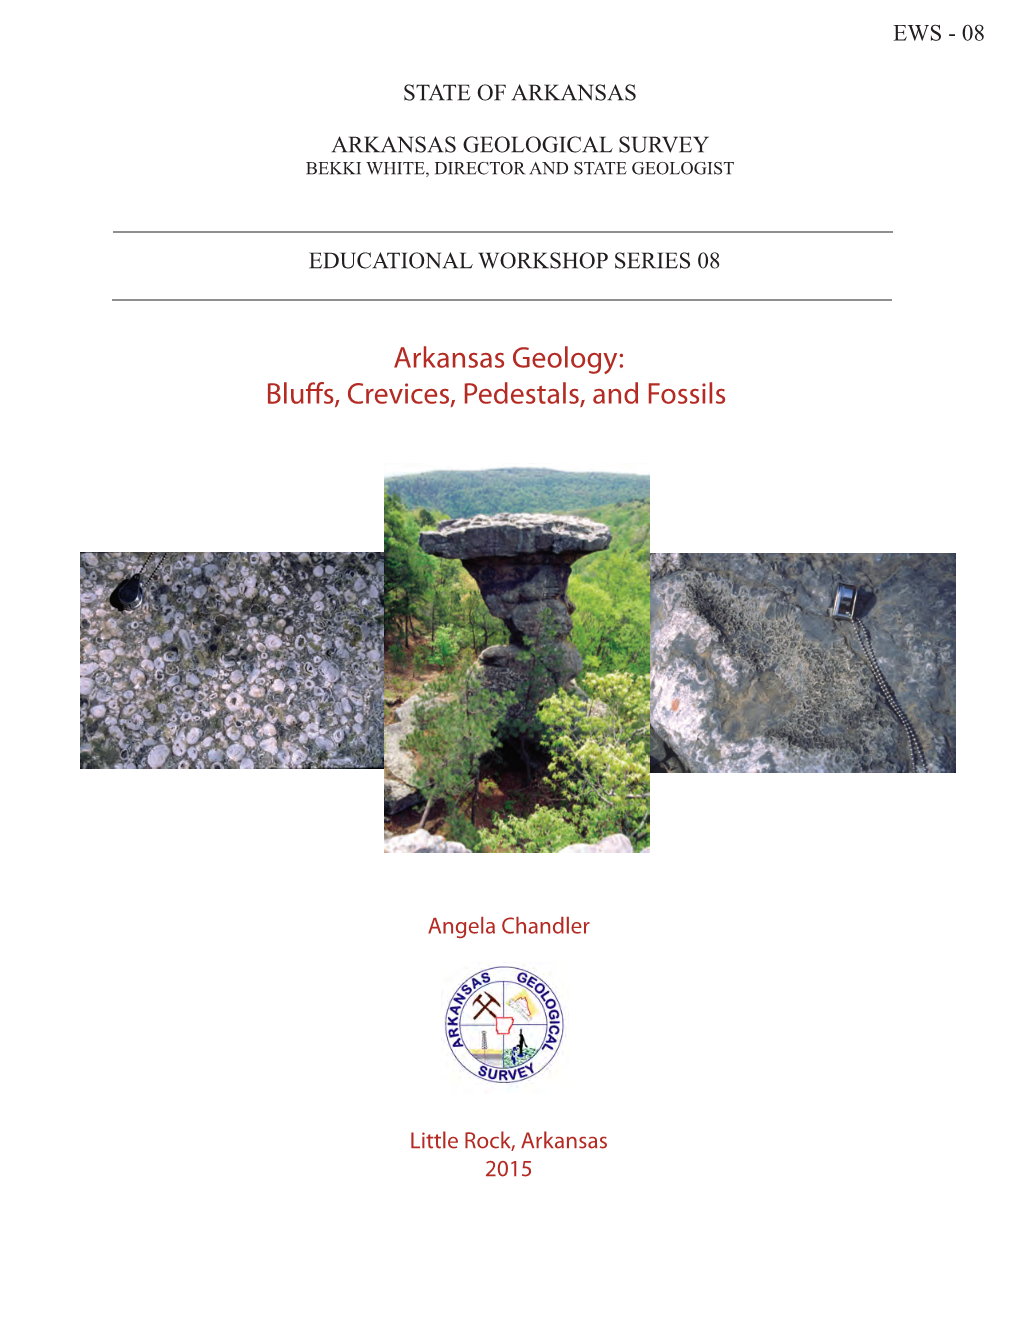 Arkansas Geology: Bluffs, Crevices, Pedestals, and Fossils